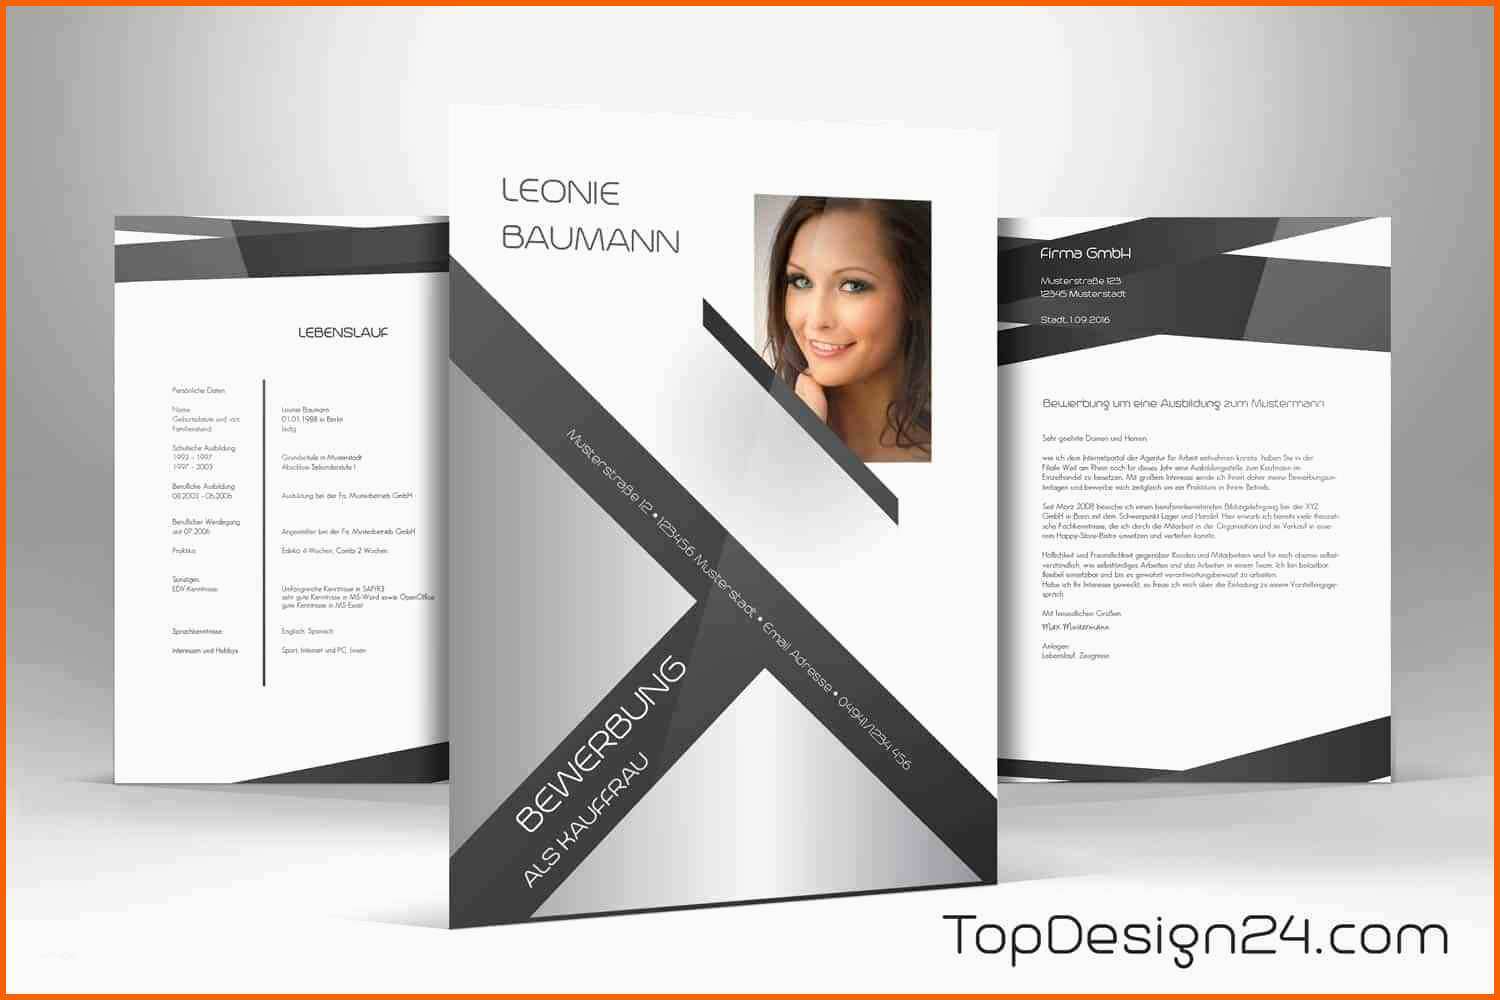 Erstaunlich Bewerbung Design Vorlage topdesign24 Deckblatt Leben